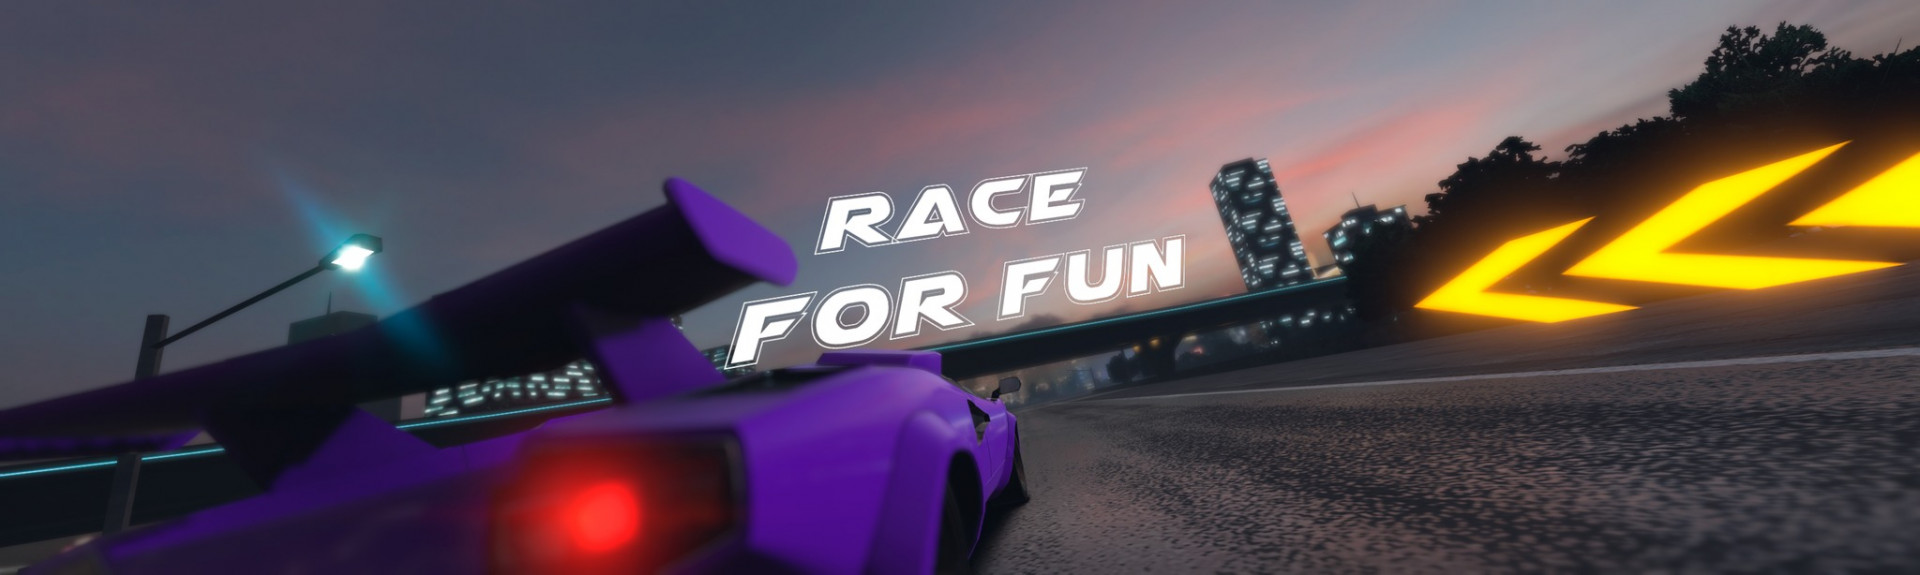 Race For Fun